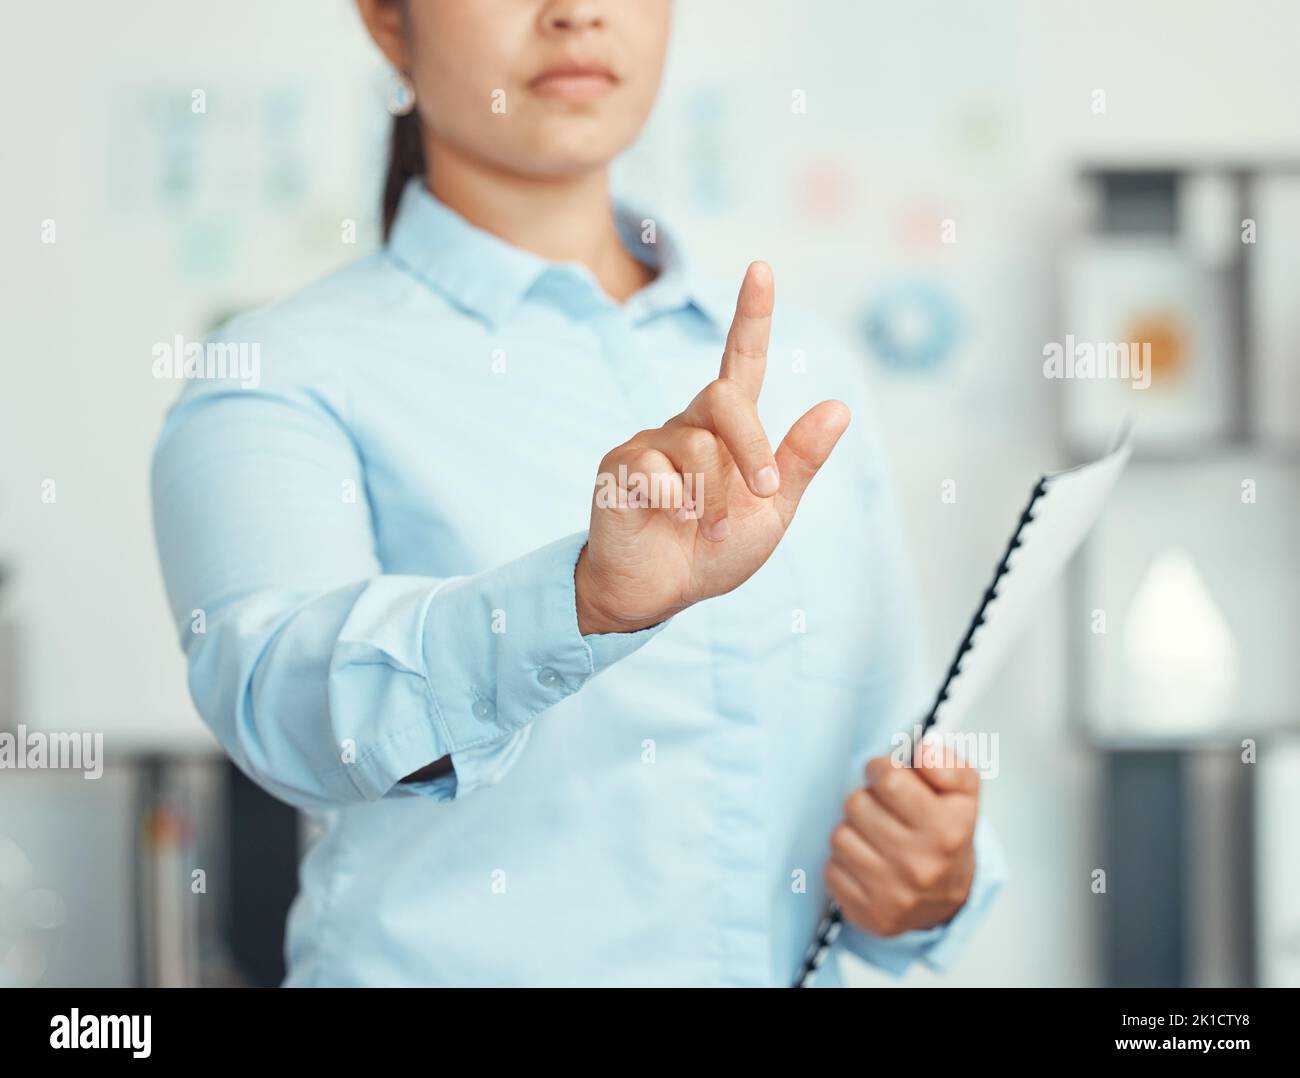 Una mujer presiona el dedo para conectar la interfaz de usuario, el sistema de interfaz de usuario e iniciar sesión en la contraseña de red, el futuro digital y los datos del panel de control. Haz clic en la mano del gerente Foto de stock